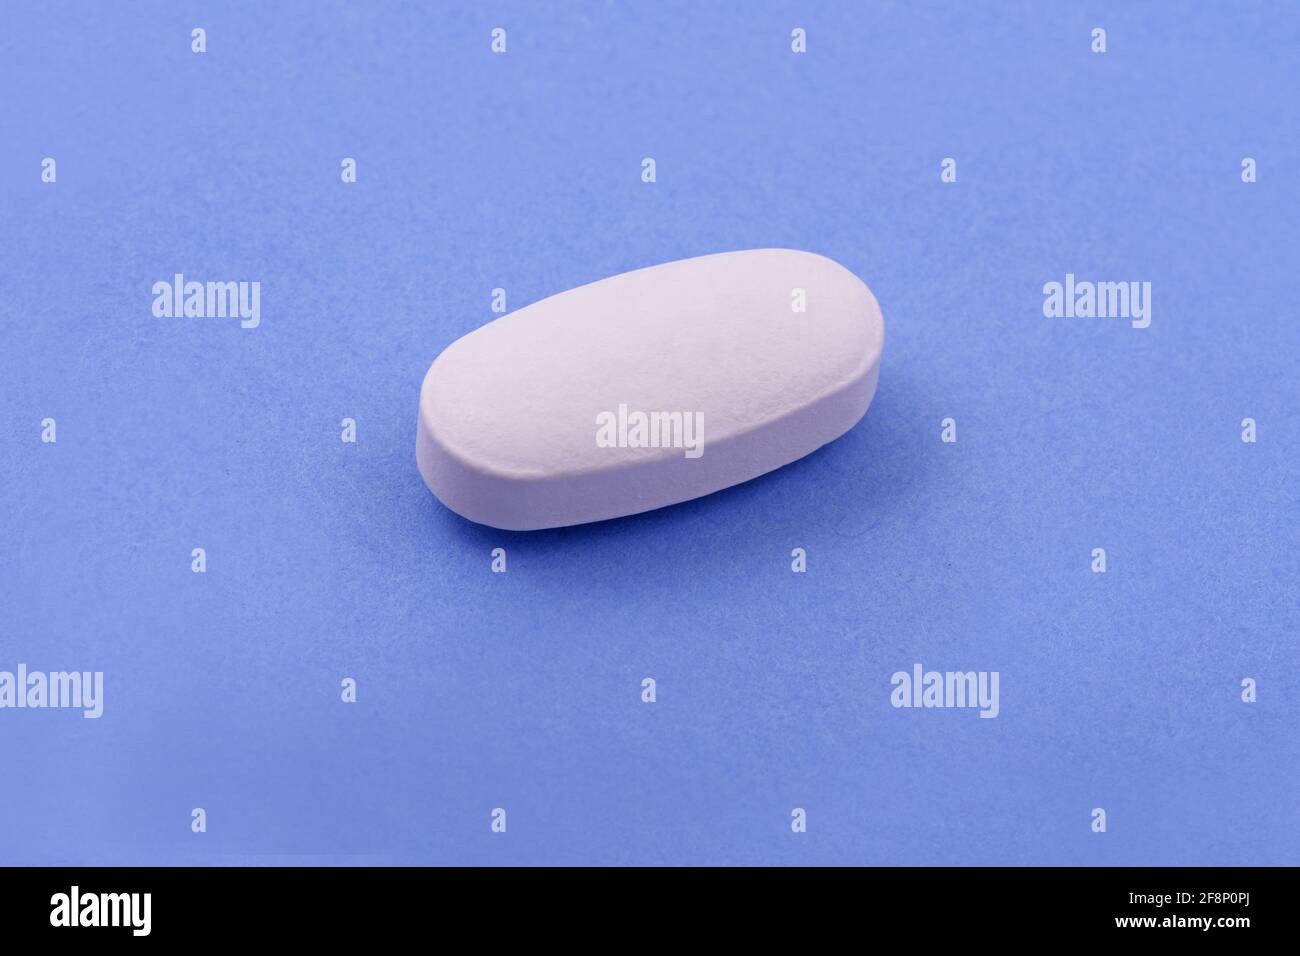 White Pharmazeutische Medizin Tablette auf blauem Hintergrund, Draufsicht Flat Lay Copy Space Medizin Konzepte Hellblauer Hintergrund Stockfoto